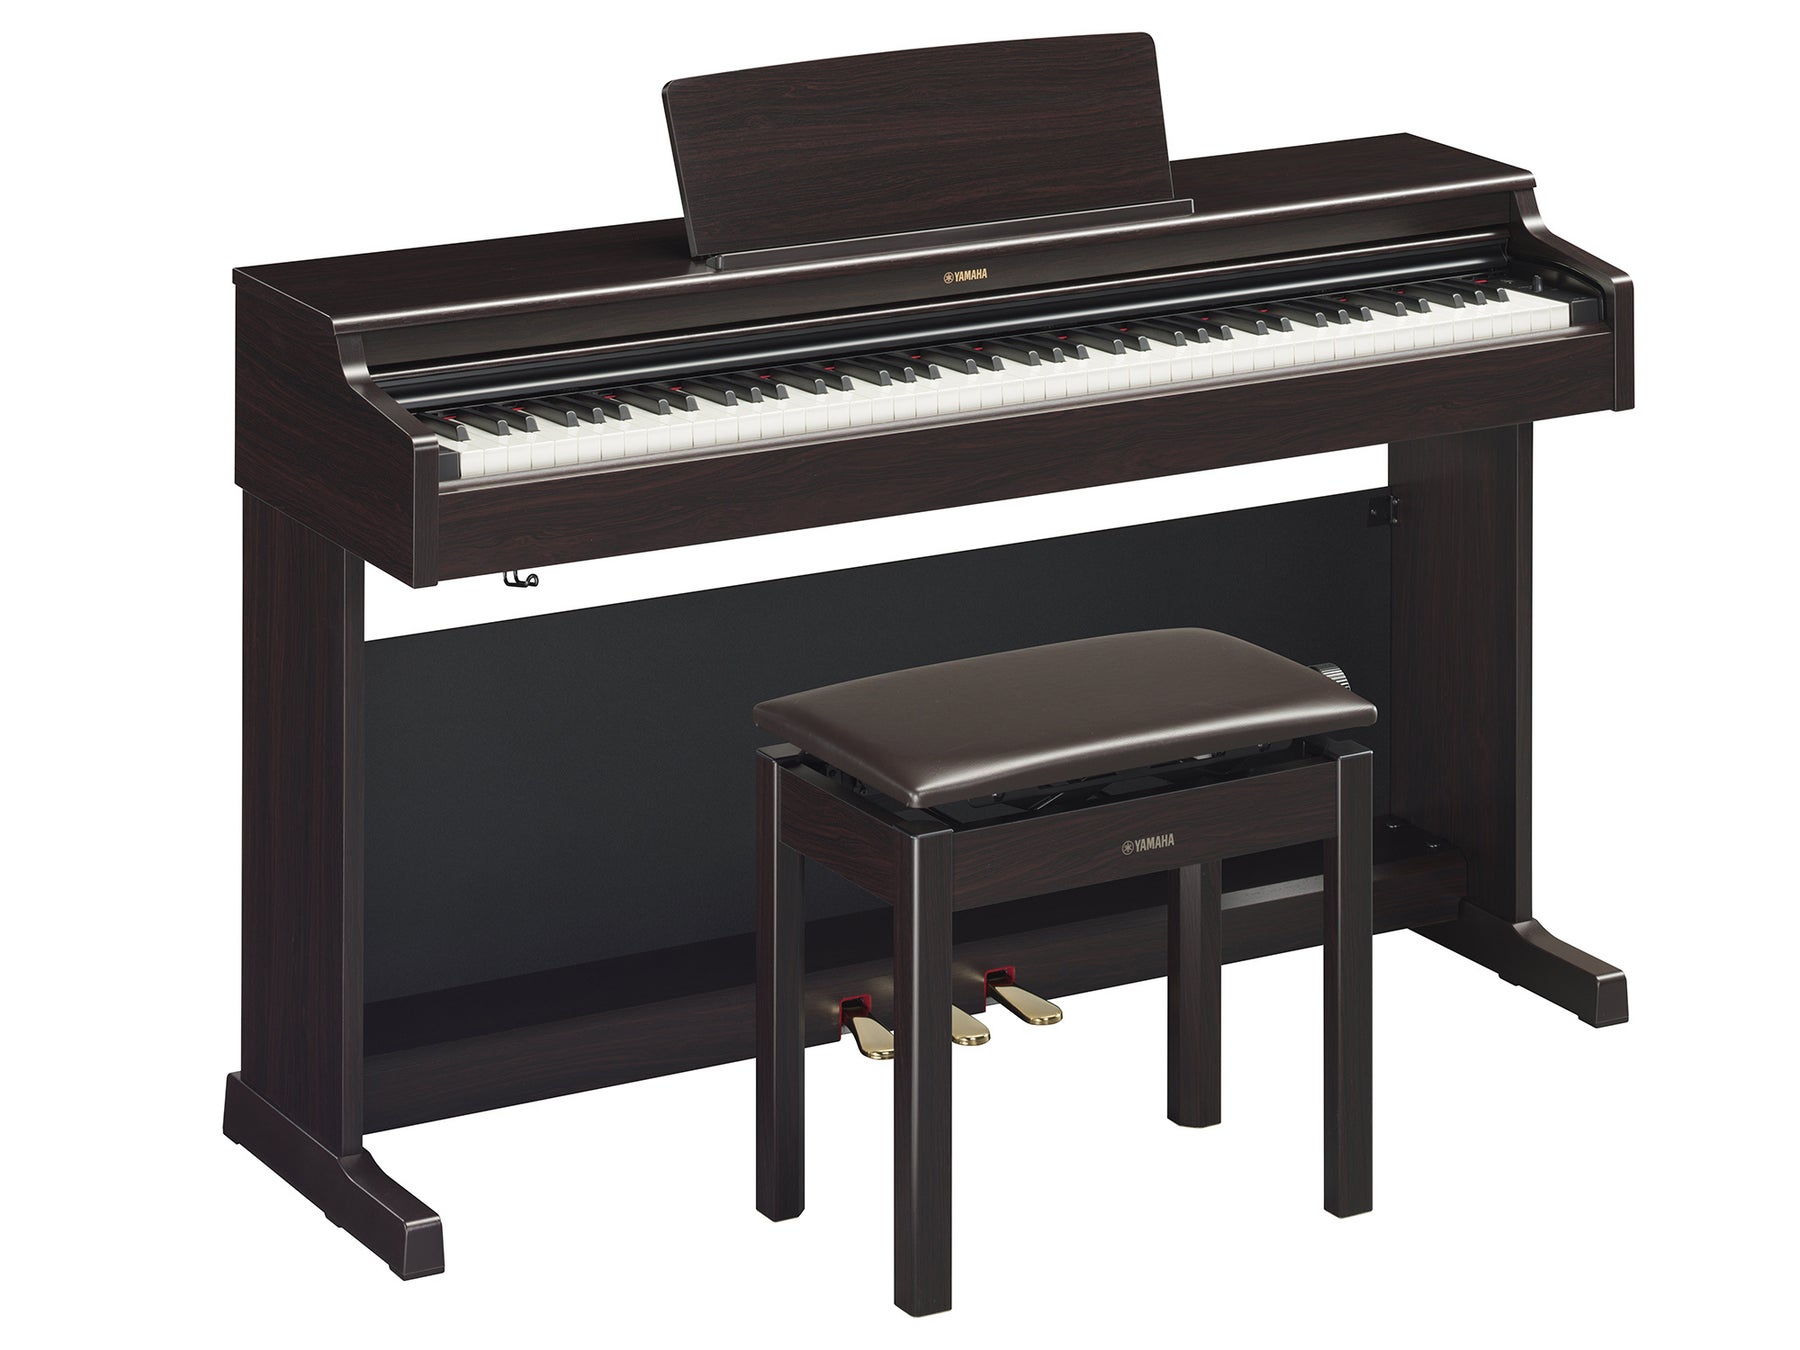 新導入の音質補正機能で耳に優しく、より快適に。ヤマハ 電子ピアノ「ARIUS」『YDP-165』『YDP-145』『YDP-S55』『YDP-S35』を発売